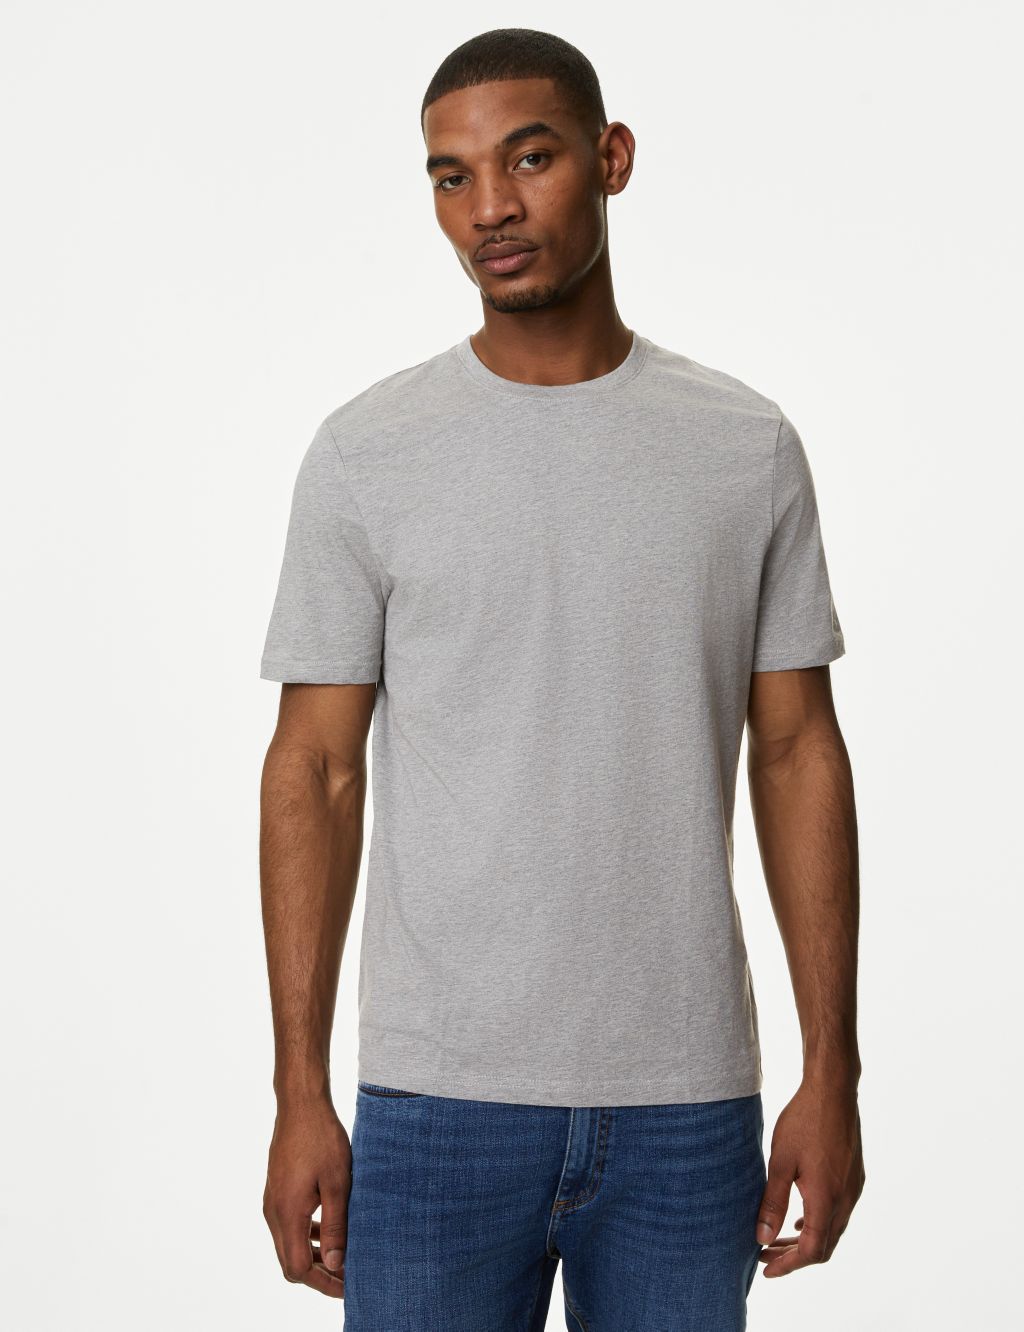 Slim Fit Pure Cotton Crew Neck T-Shirt image 3